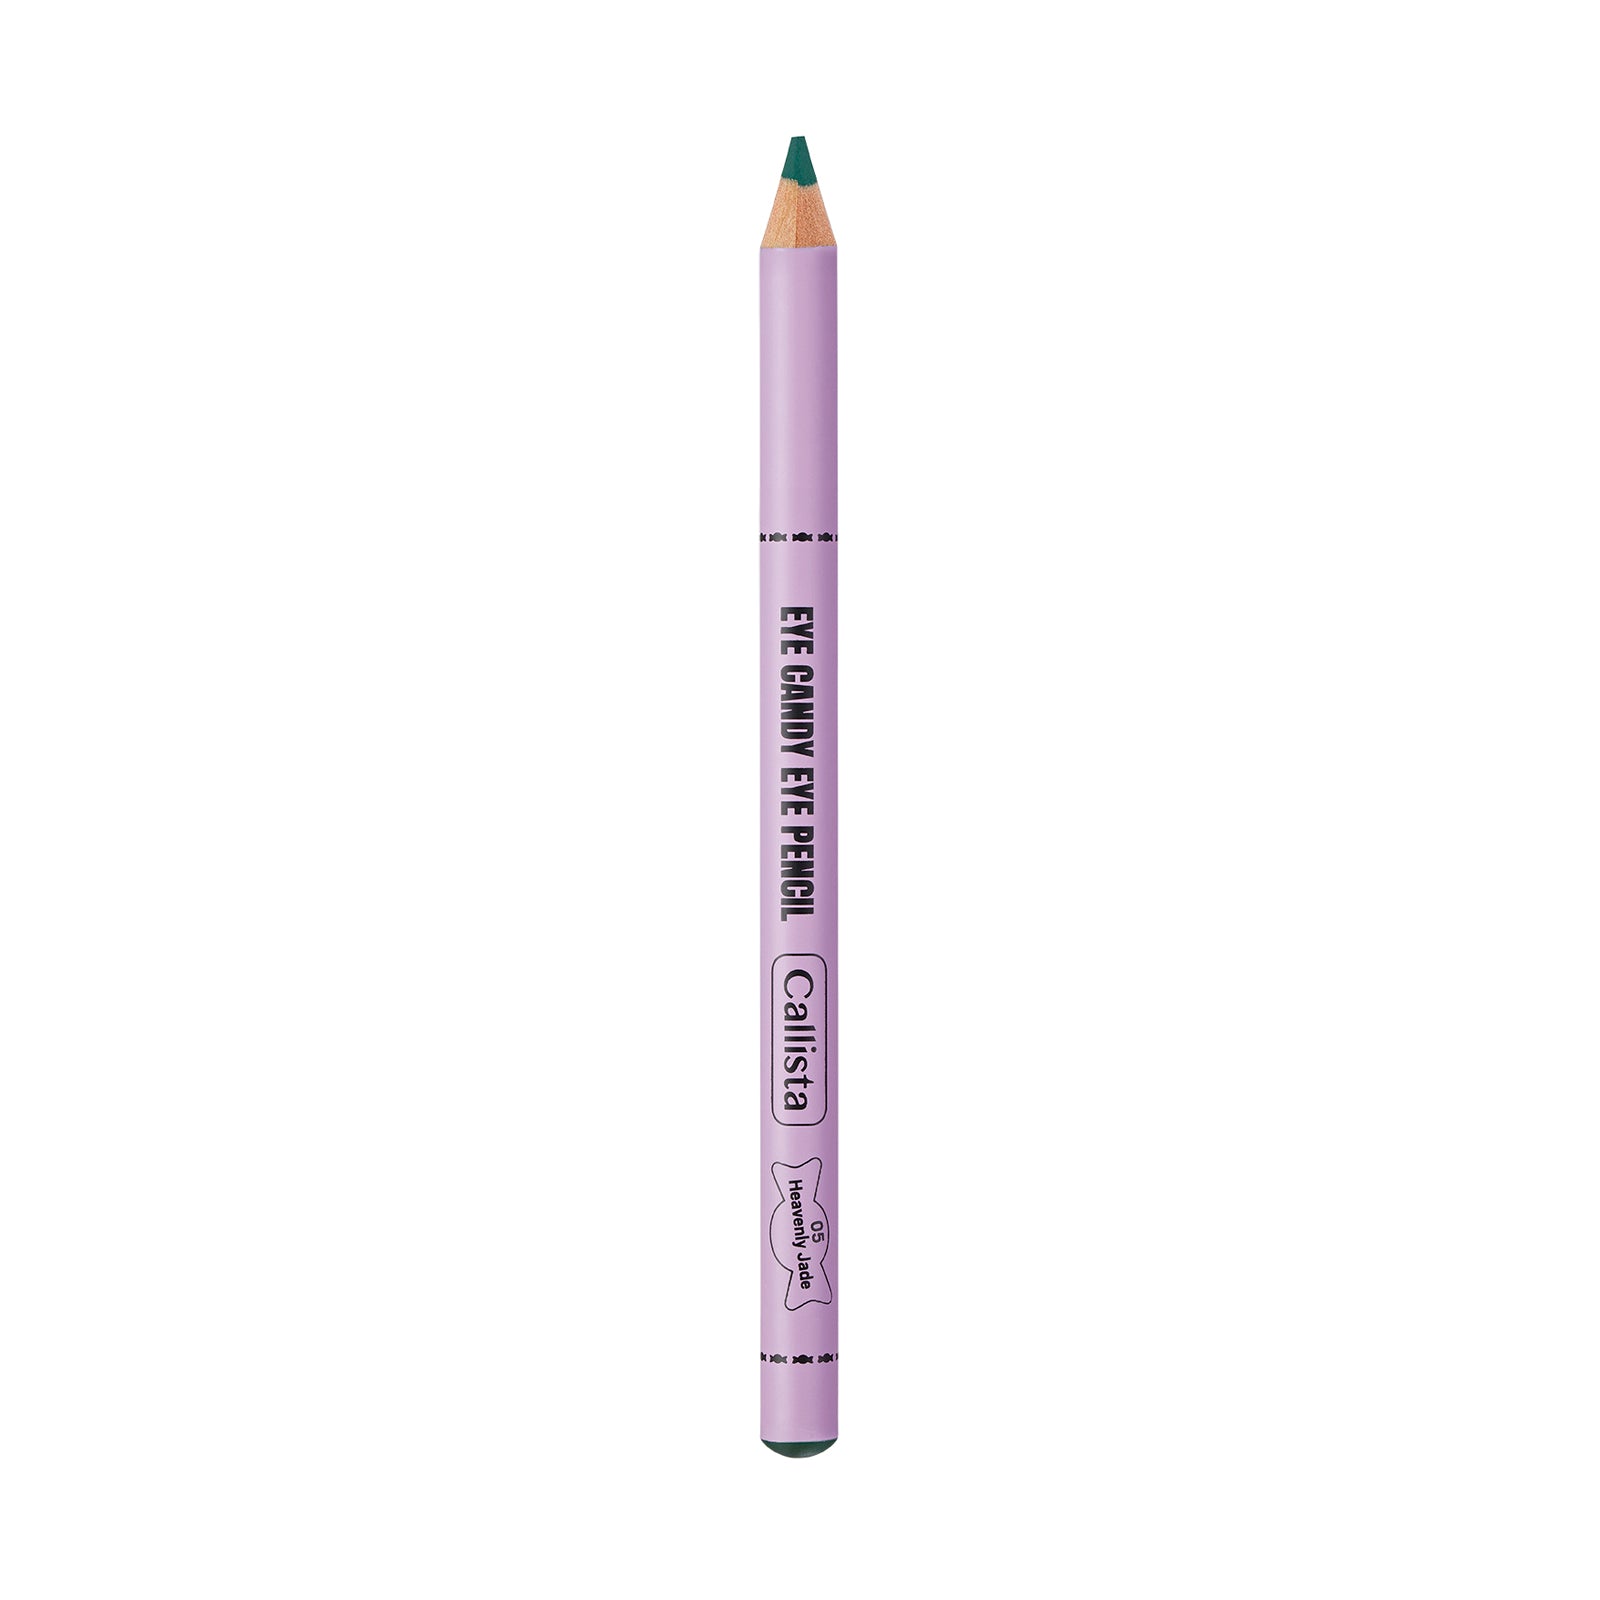 Callista Eye Pencil 0.78g 05